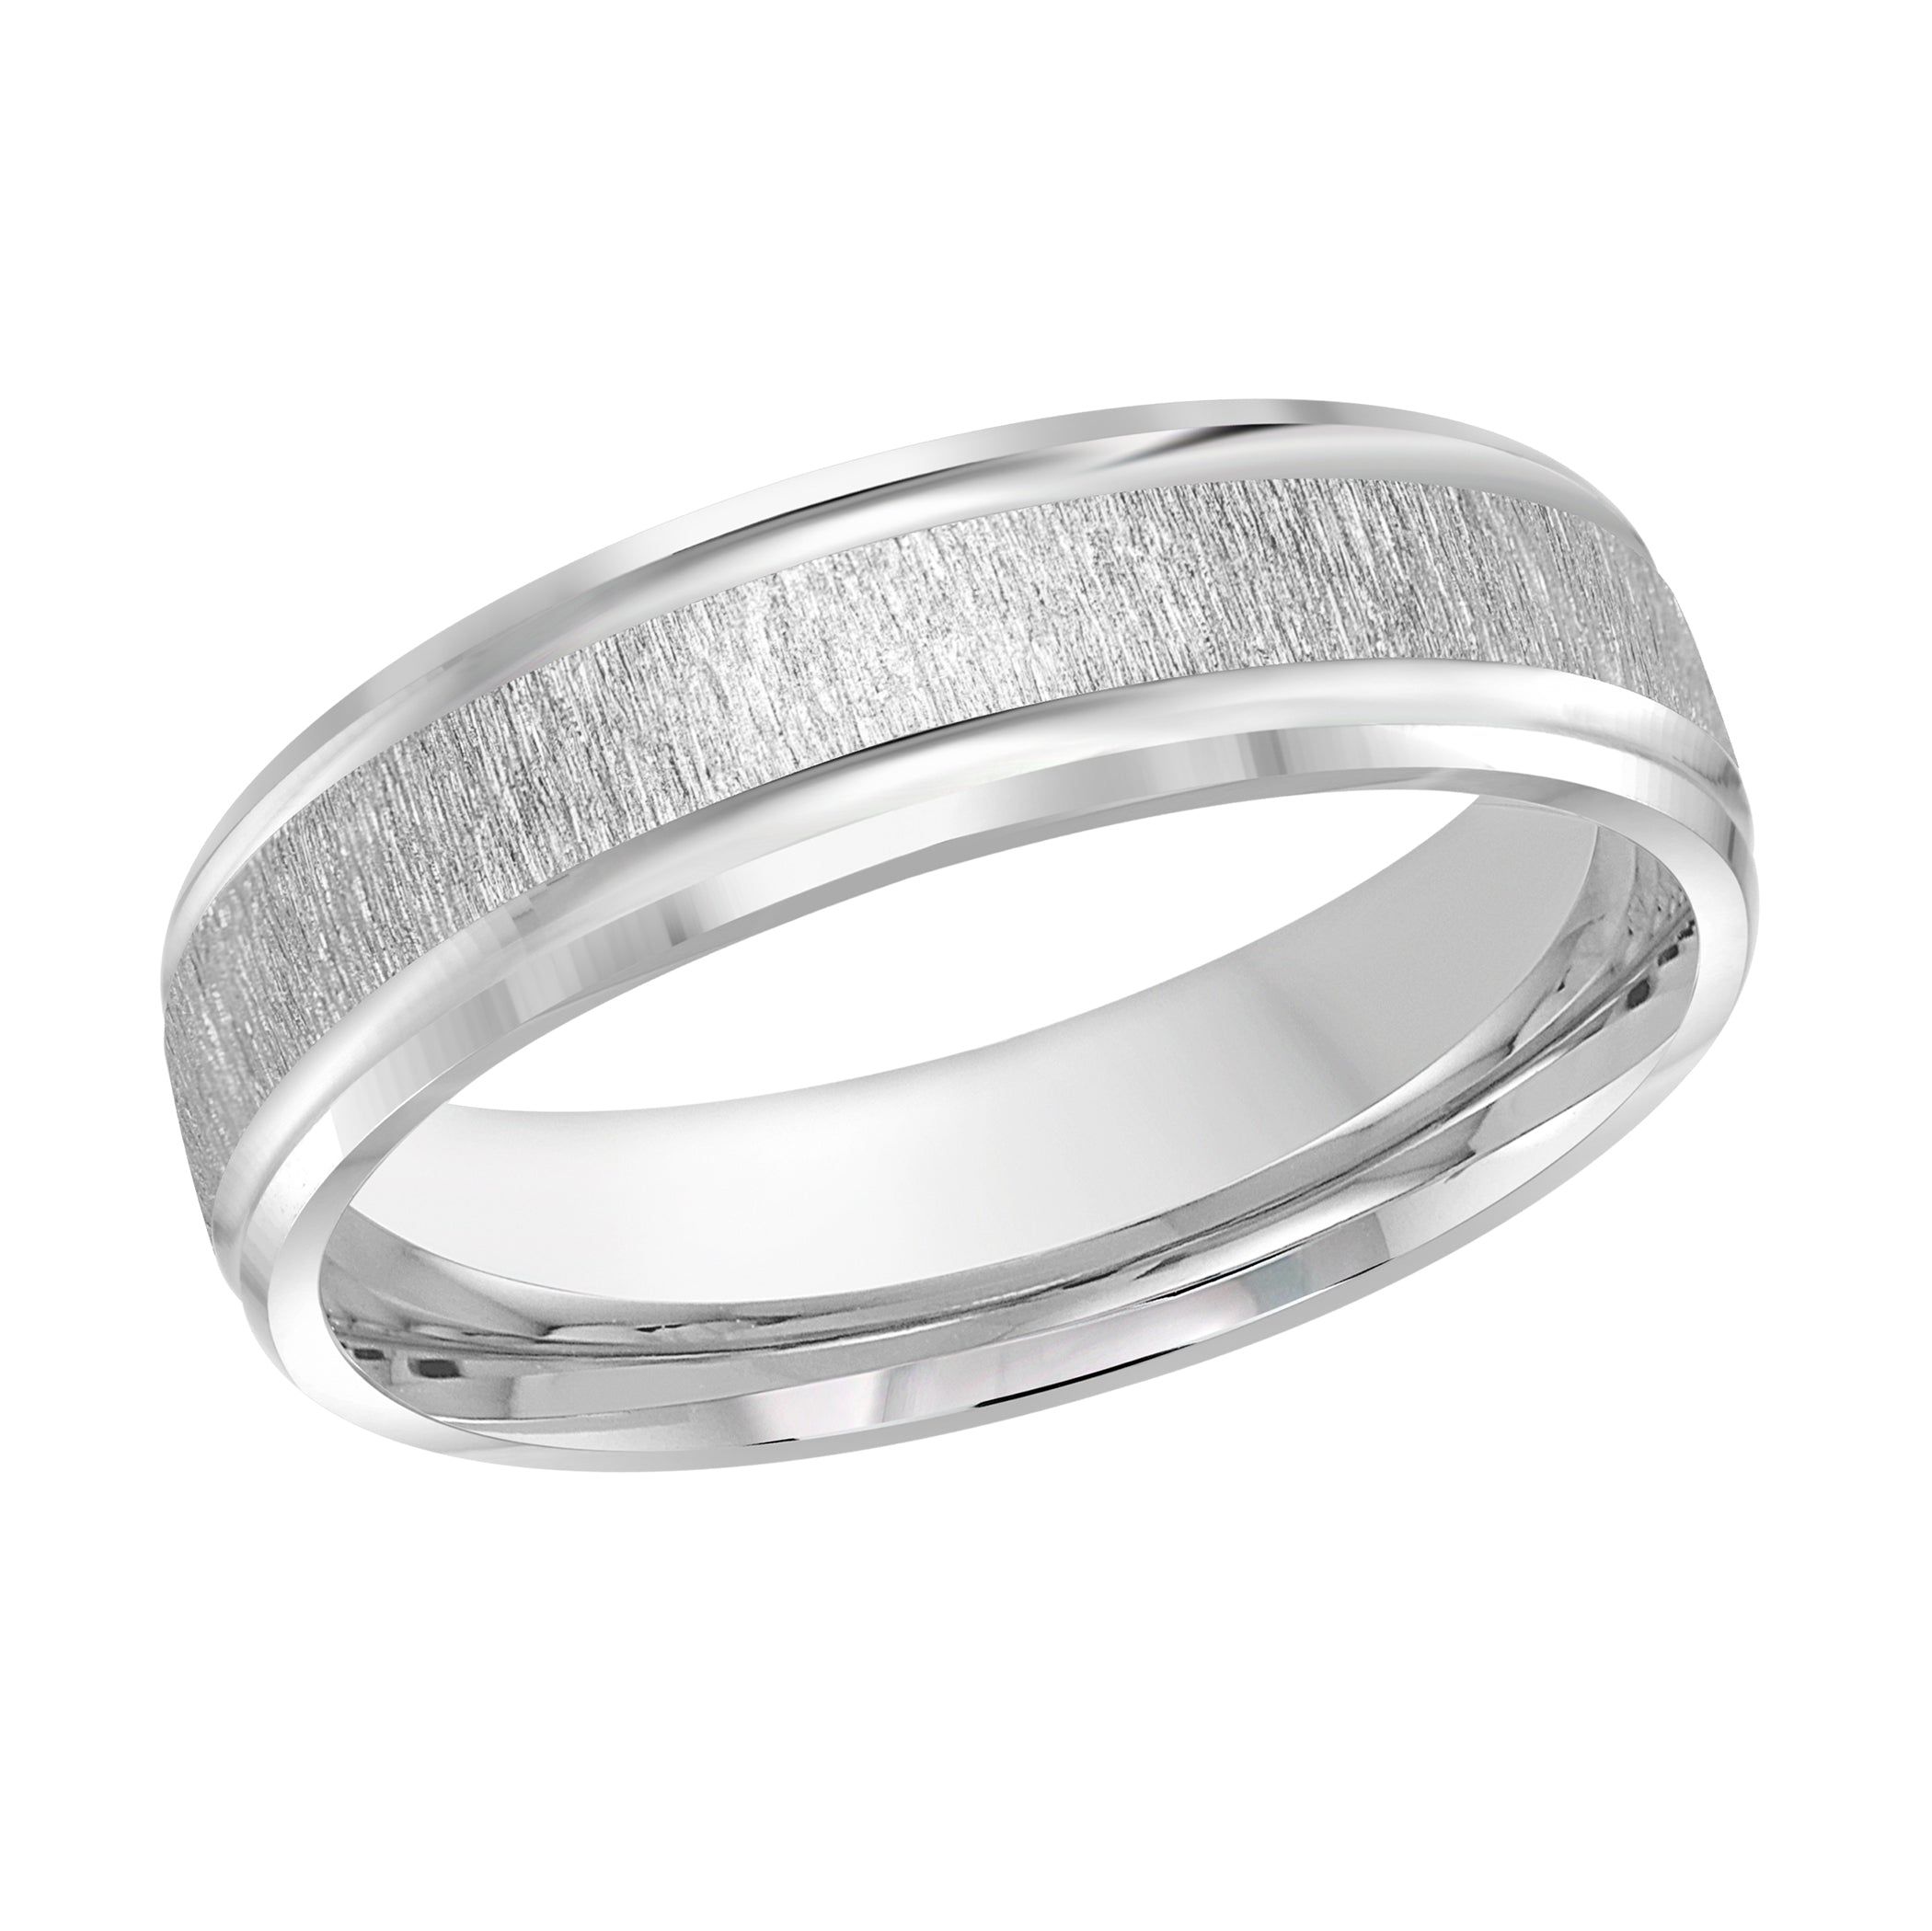 Men's 6mm Sandpaper-finish Beveled Edge Wedding Ring